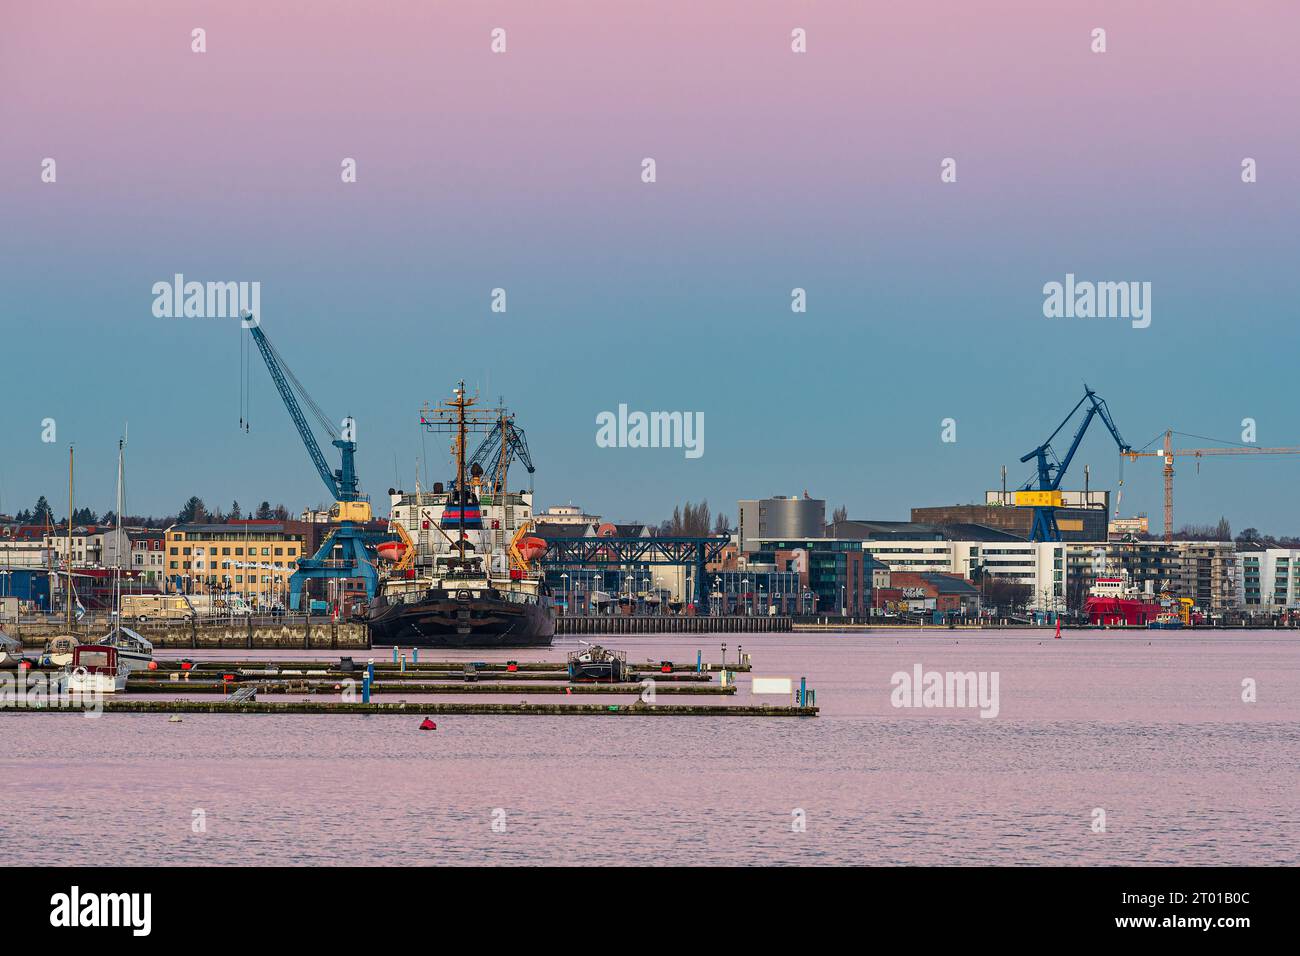 Orario mattutino al porto cittadino sul fiume Warnow nella città anseatica di Rostock, Germania. Foto Stock